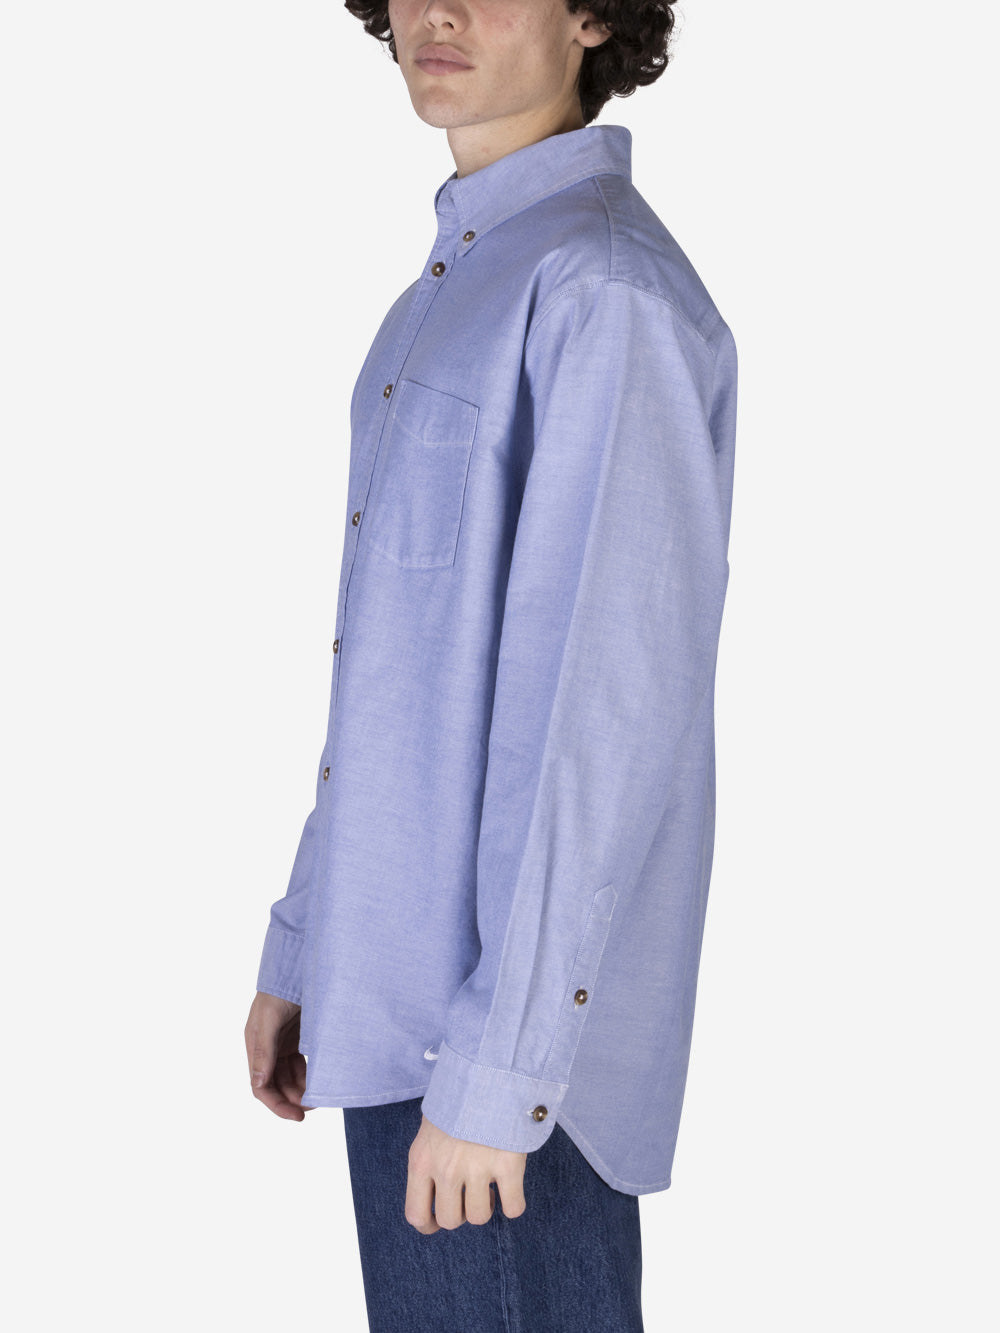 NIKE Camicia Oxford Button-Down in cotone Celeste Urbanstaroma